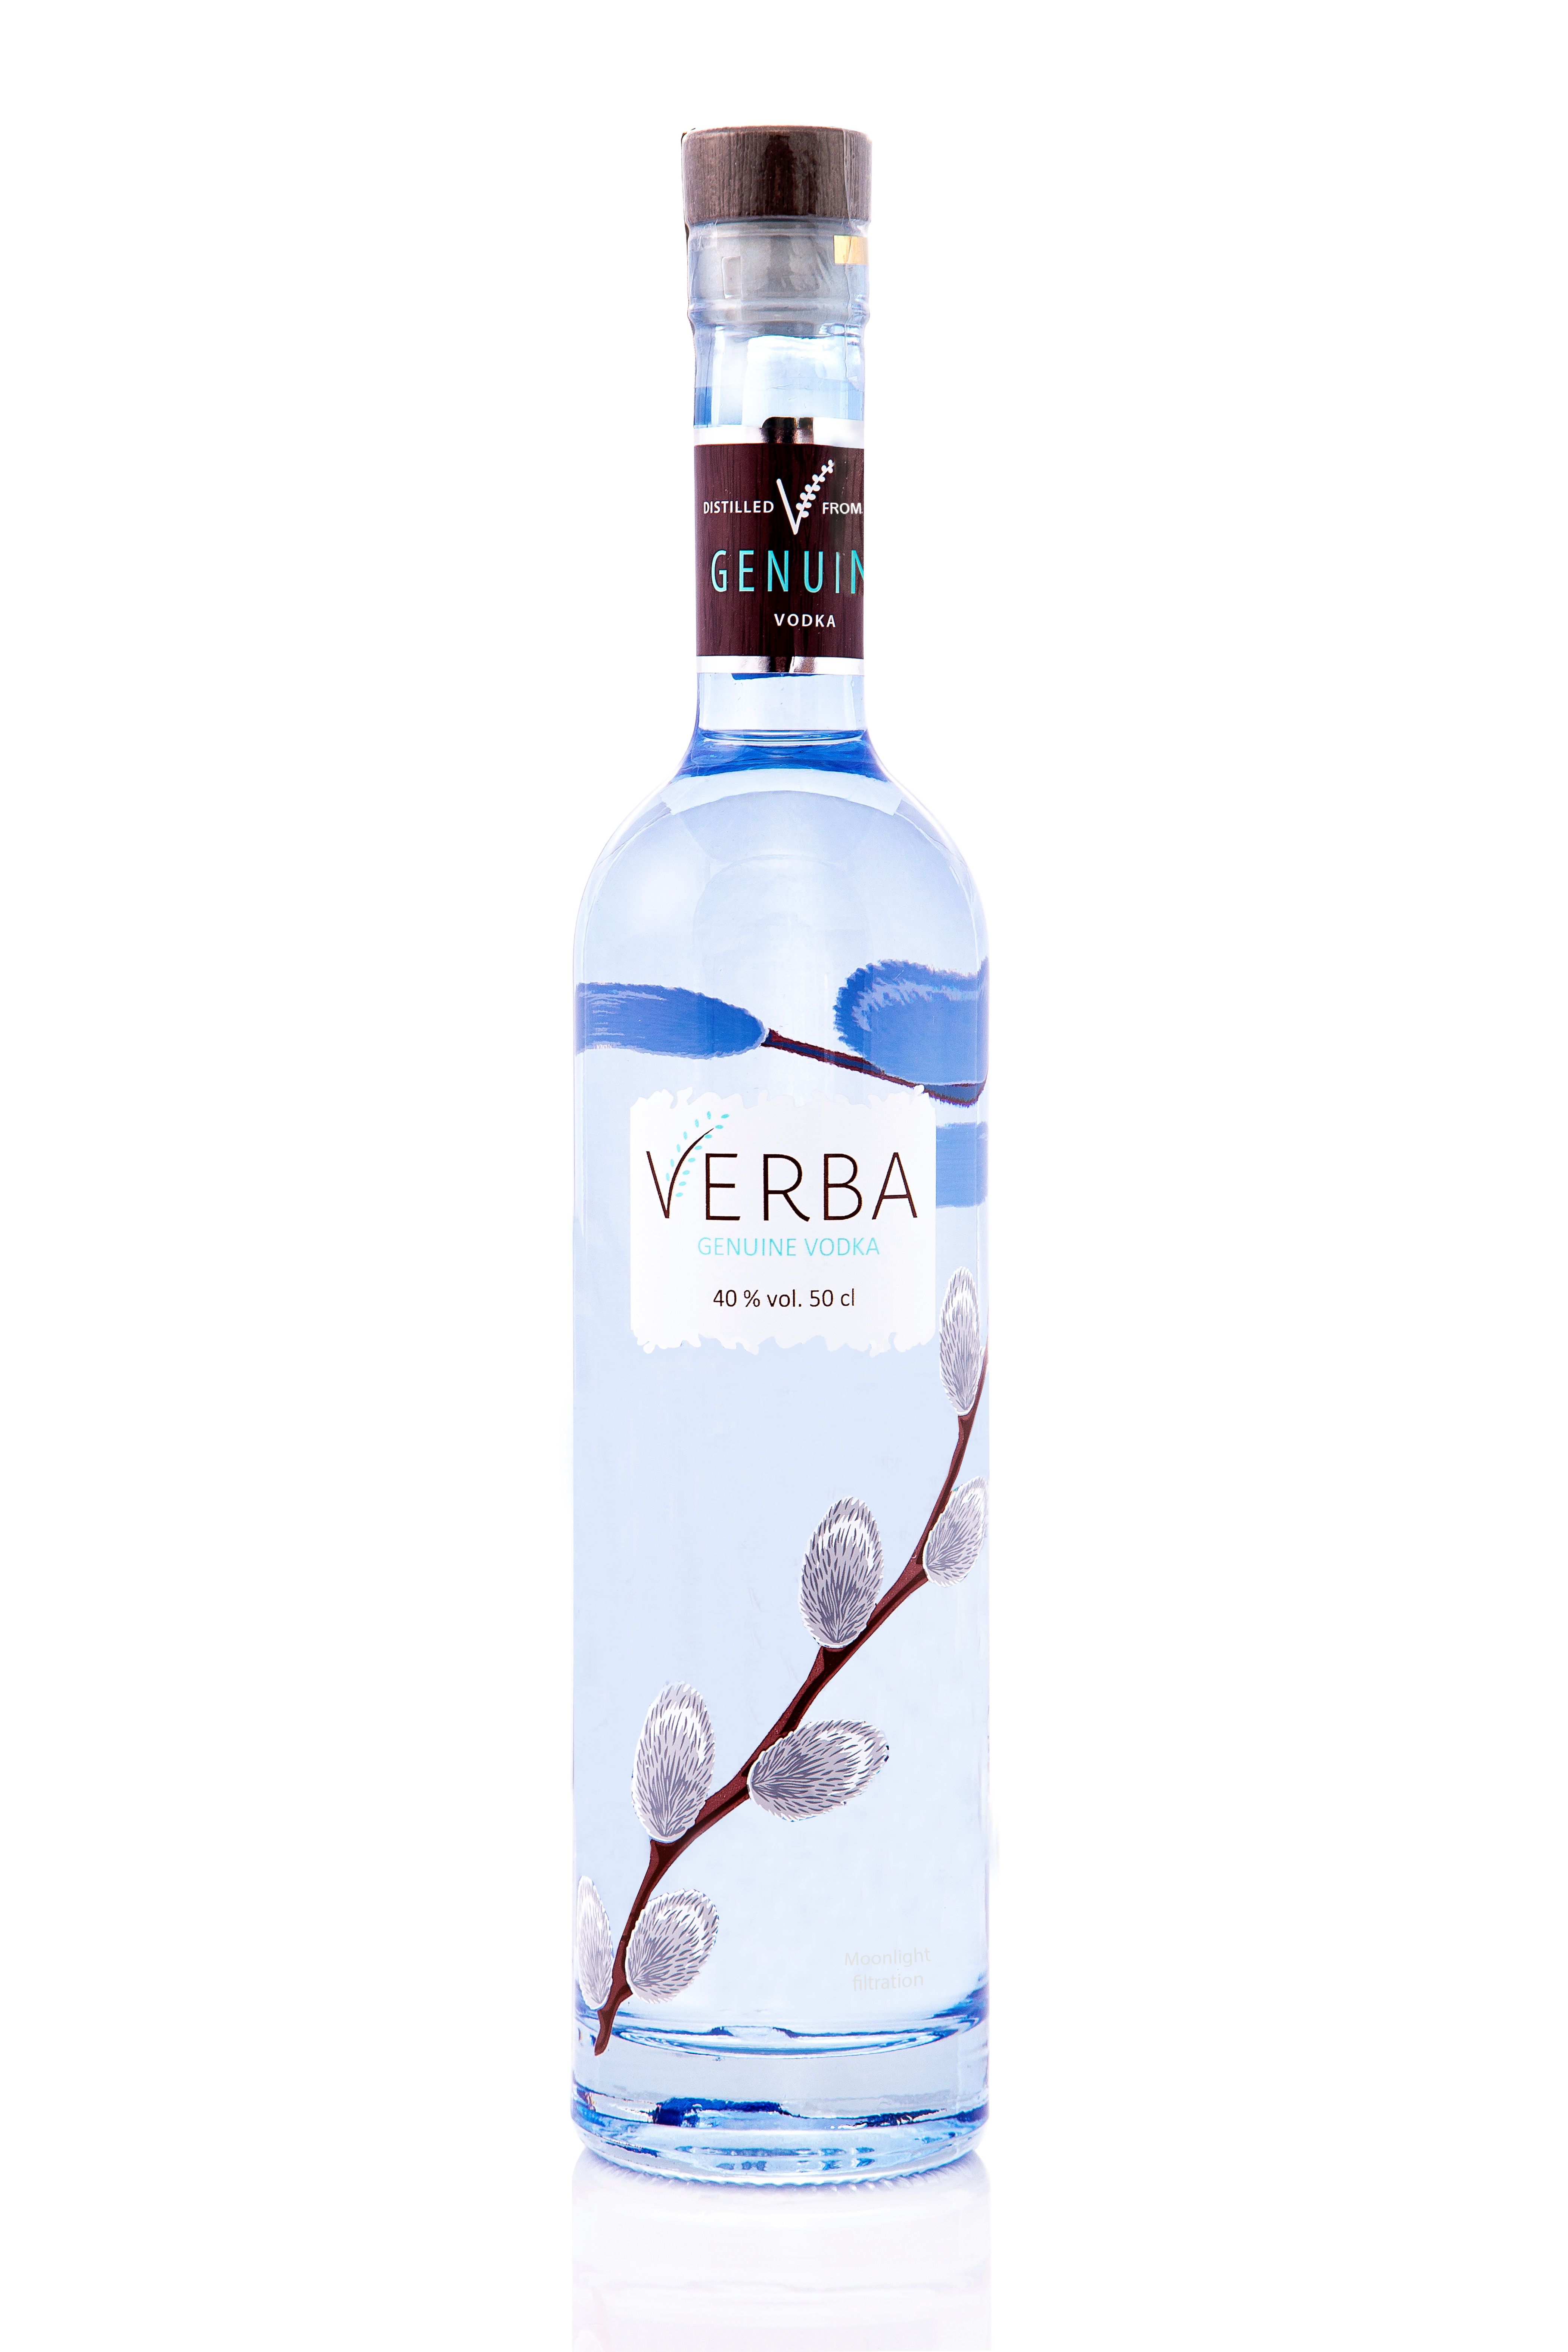  Vodka "Verba"